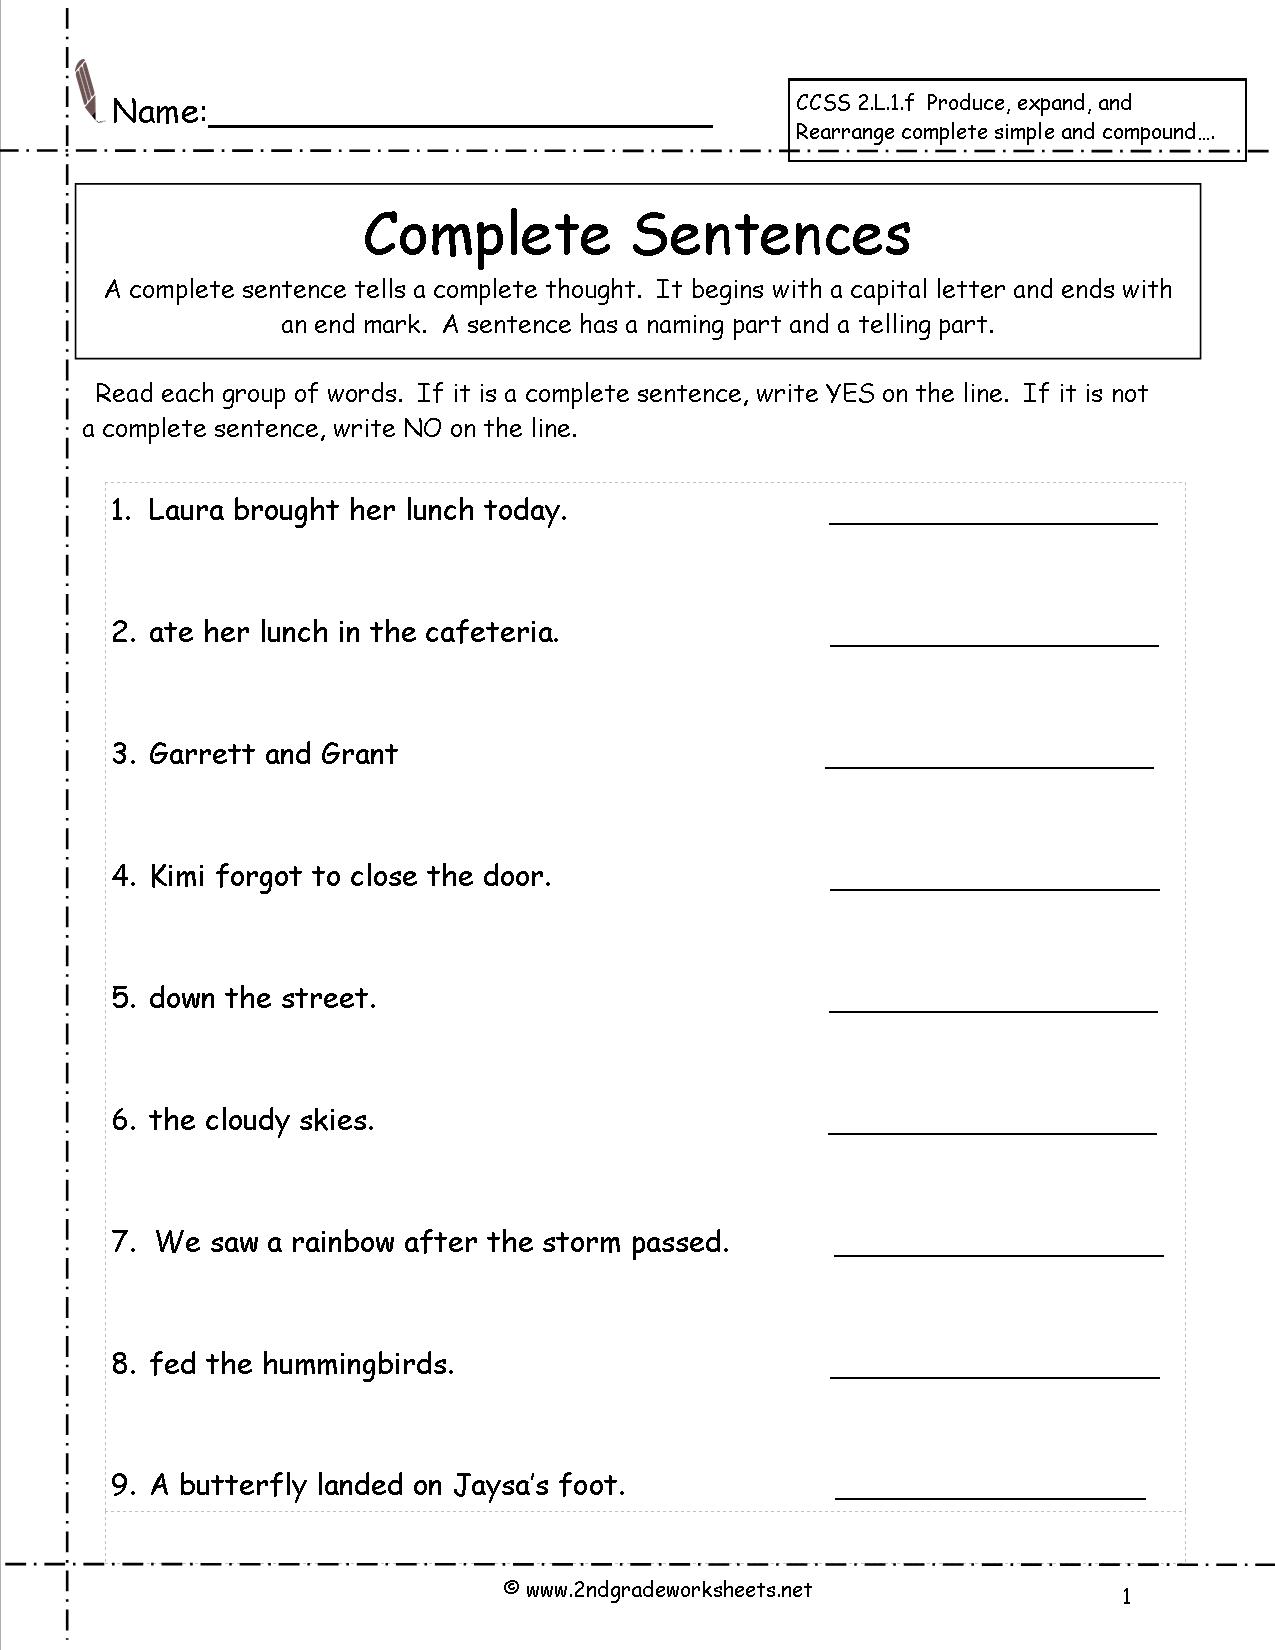 sentence-word-order-worksheet-word-order-english-sentences-word-sentences